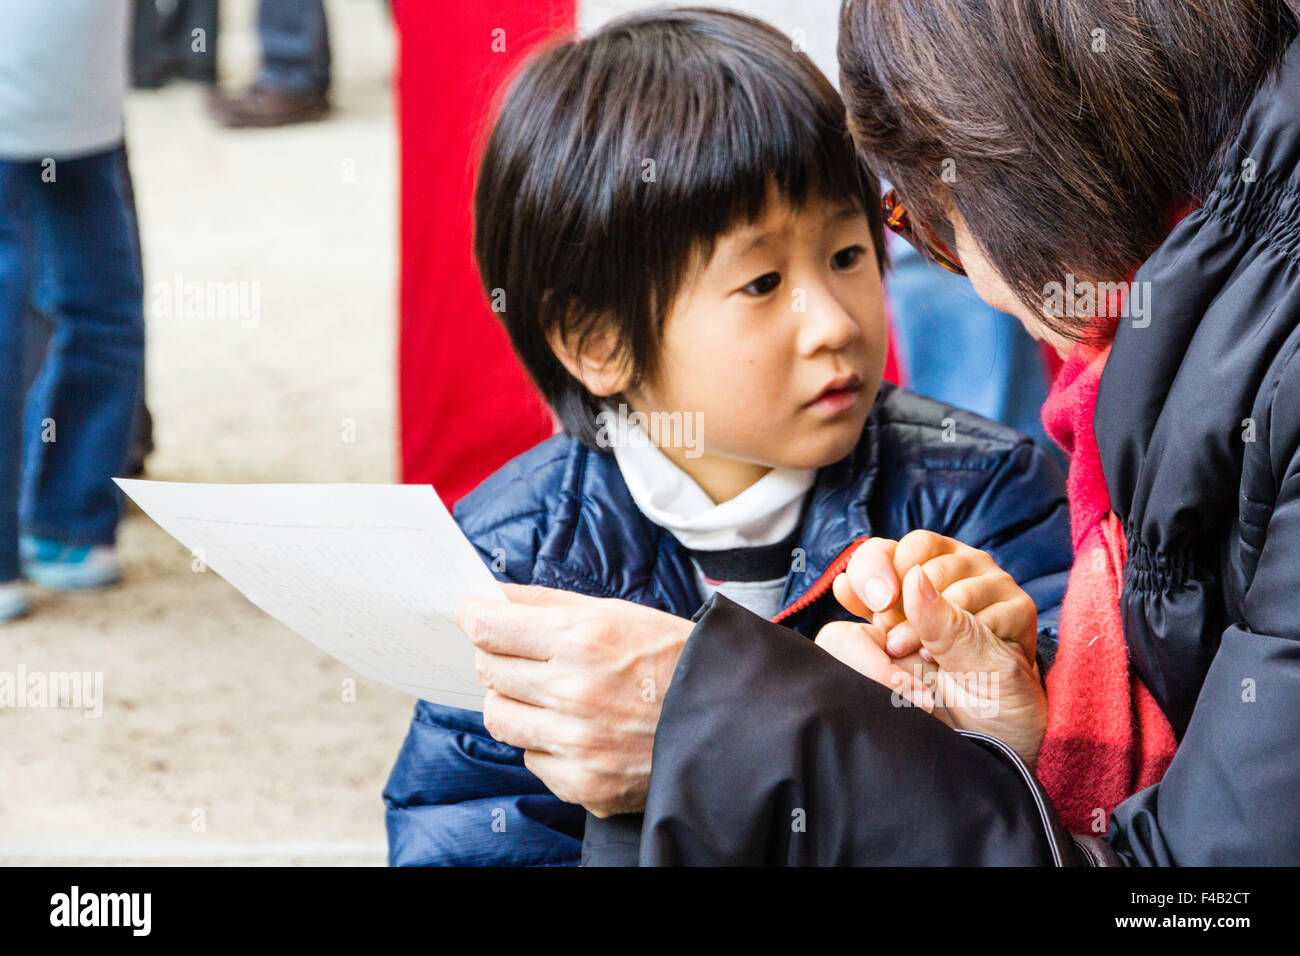 Culte japonais. Mère détient main de petit enfant, garçon, 5-6 ans, qu'elle lit un omikuji, fortune papier. Très anxieux expression sur visage du garçon. Banque D'Images